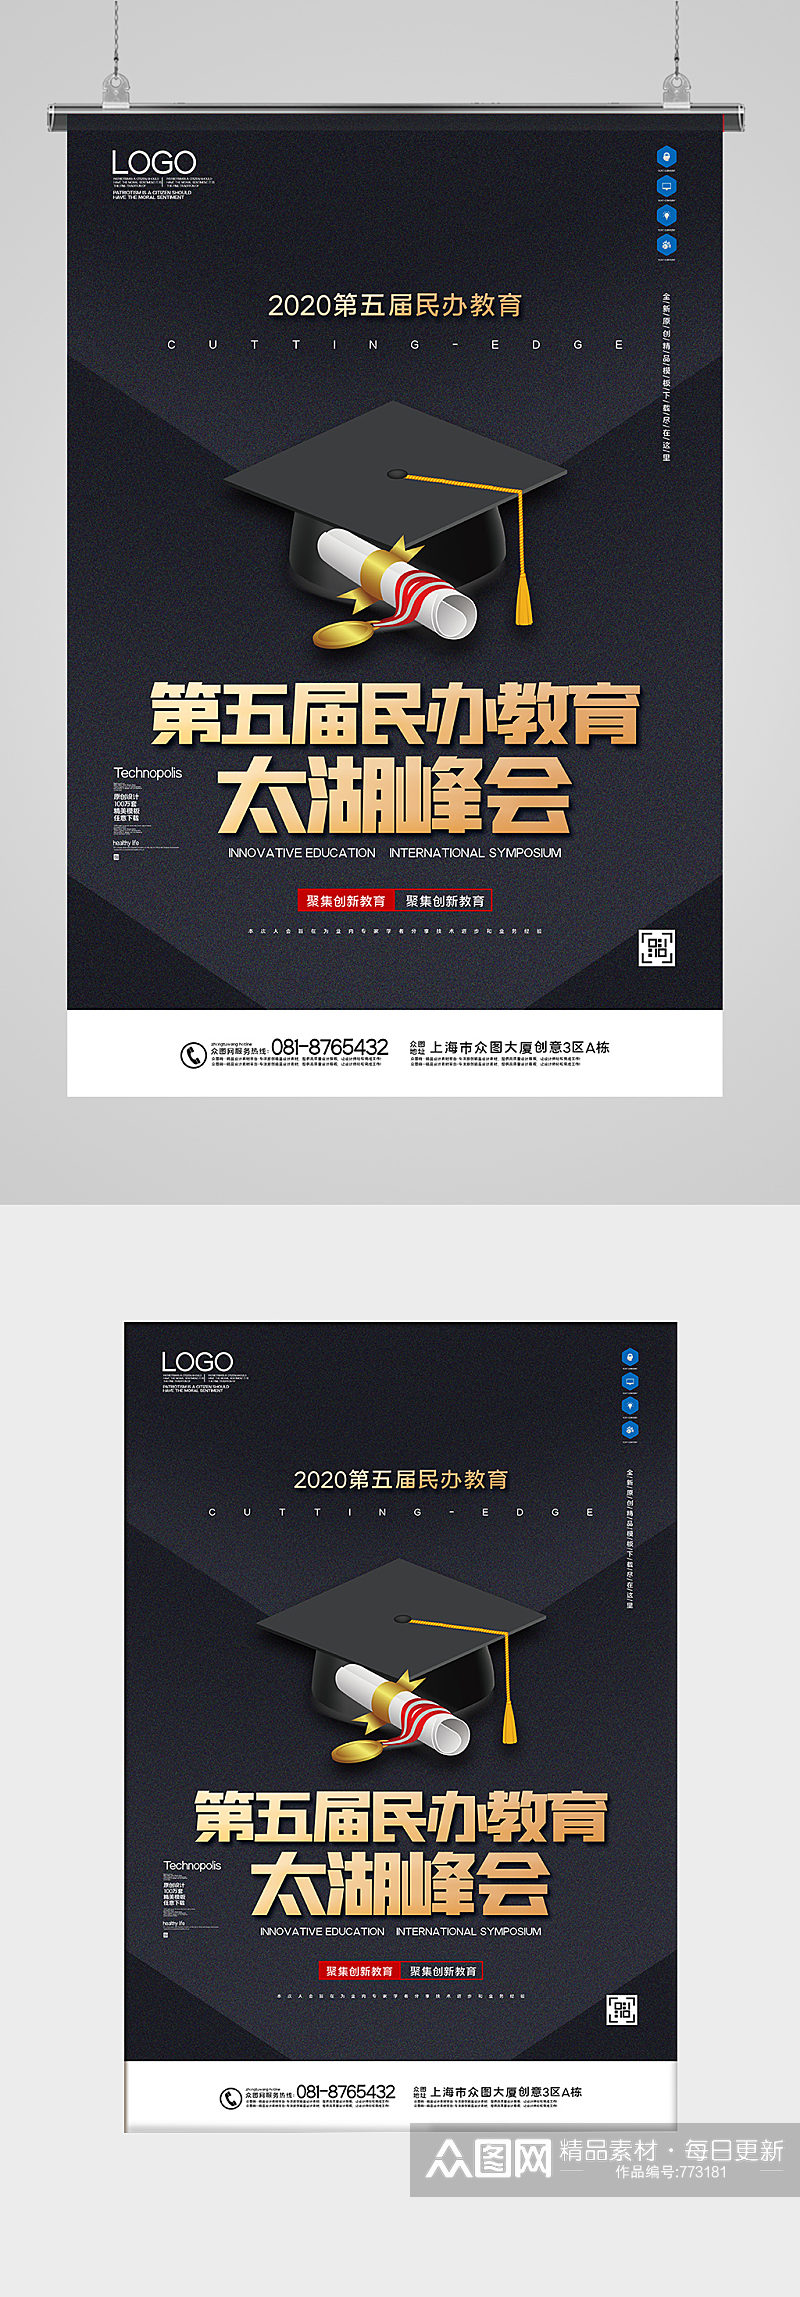 第五届民办教育太湖峰会宣传海报设计素材